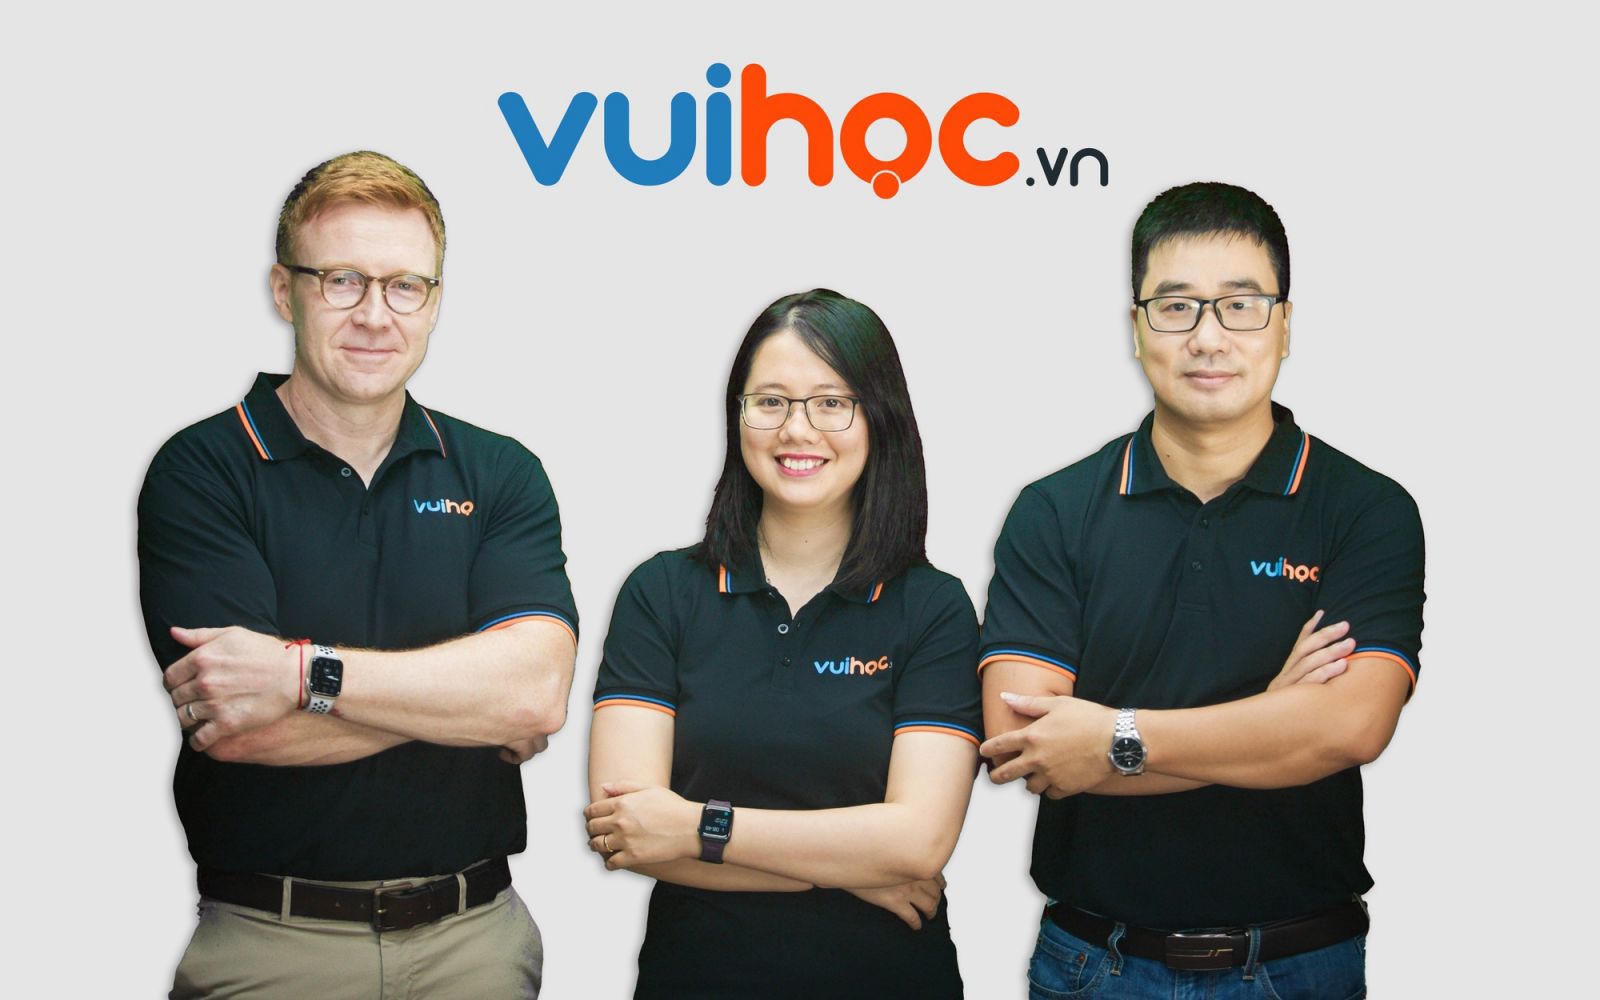 Đội ngũ lãnh đạo startup, từ phải qua, Giám đốc Travis Richard Stewart, COO Thu Đỗ và CEO Lâm Đỗ. Ảnh: VUIHOC